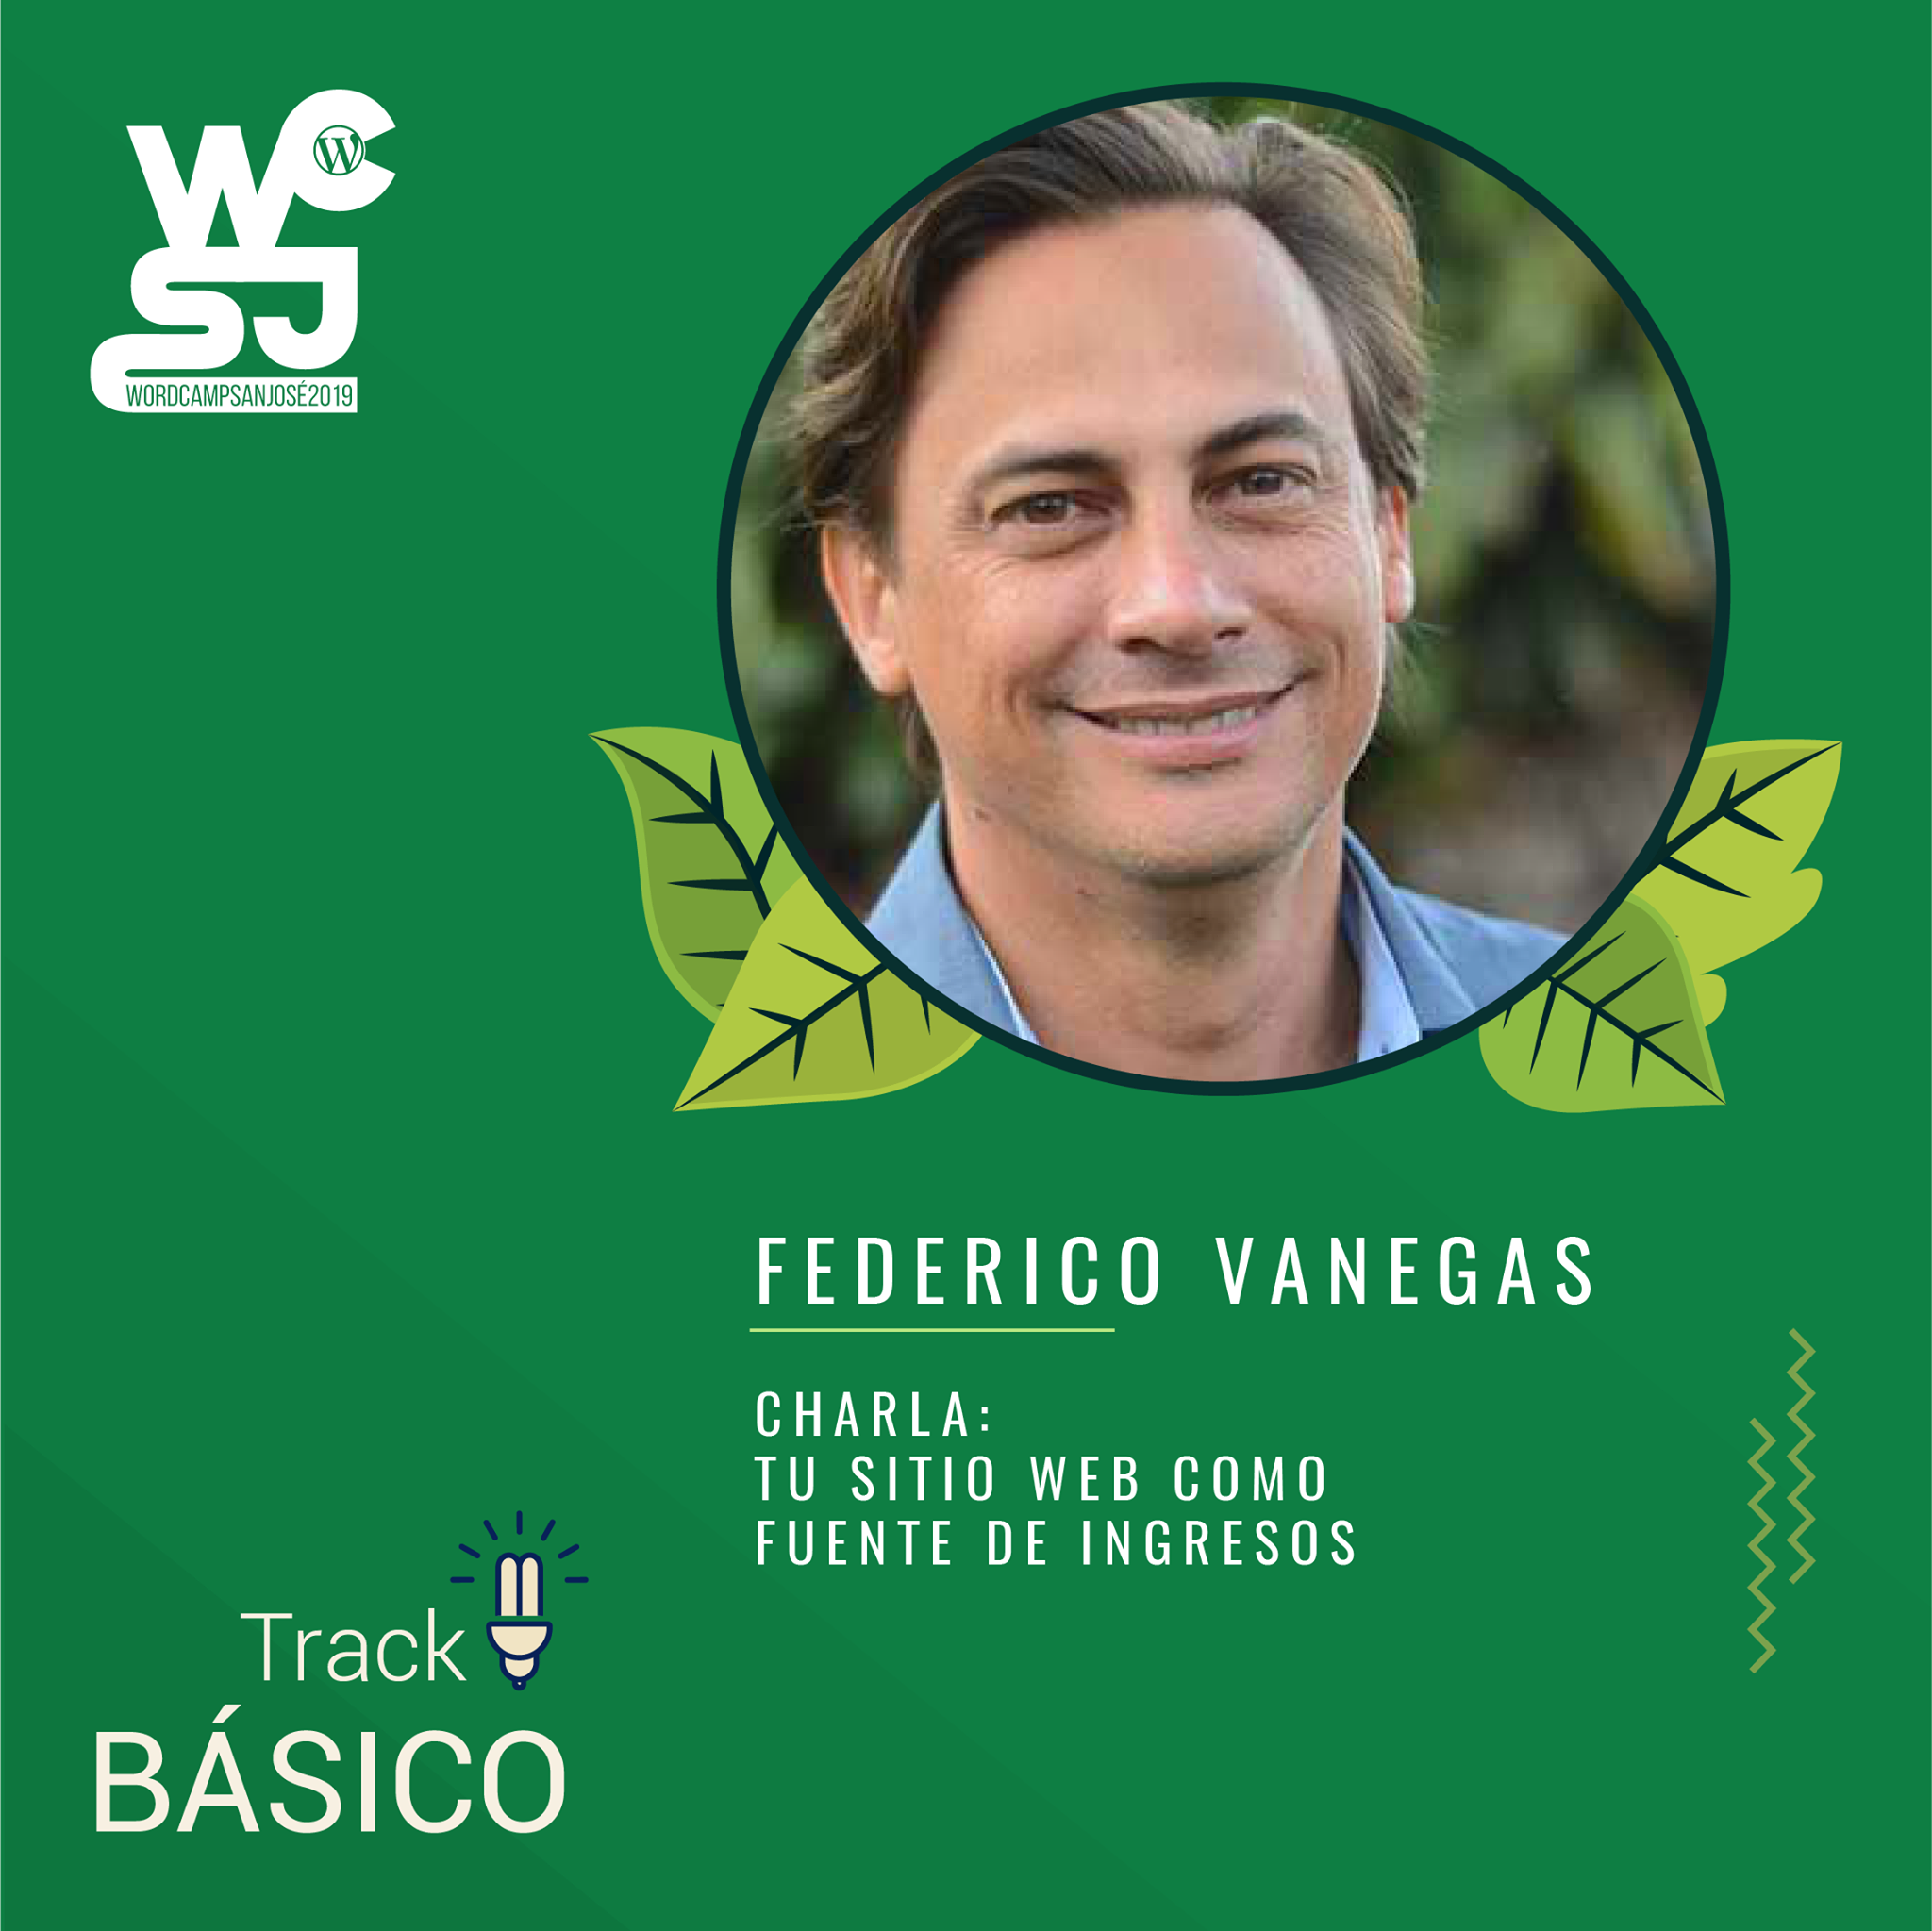 Federico Vanegas ponente del WordCamp San José 2019